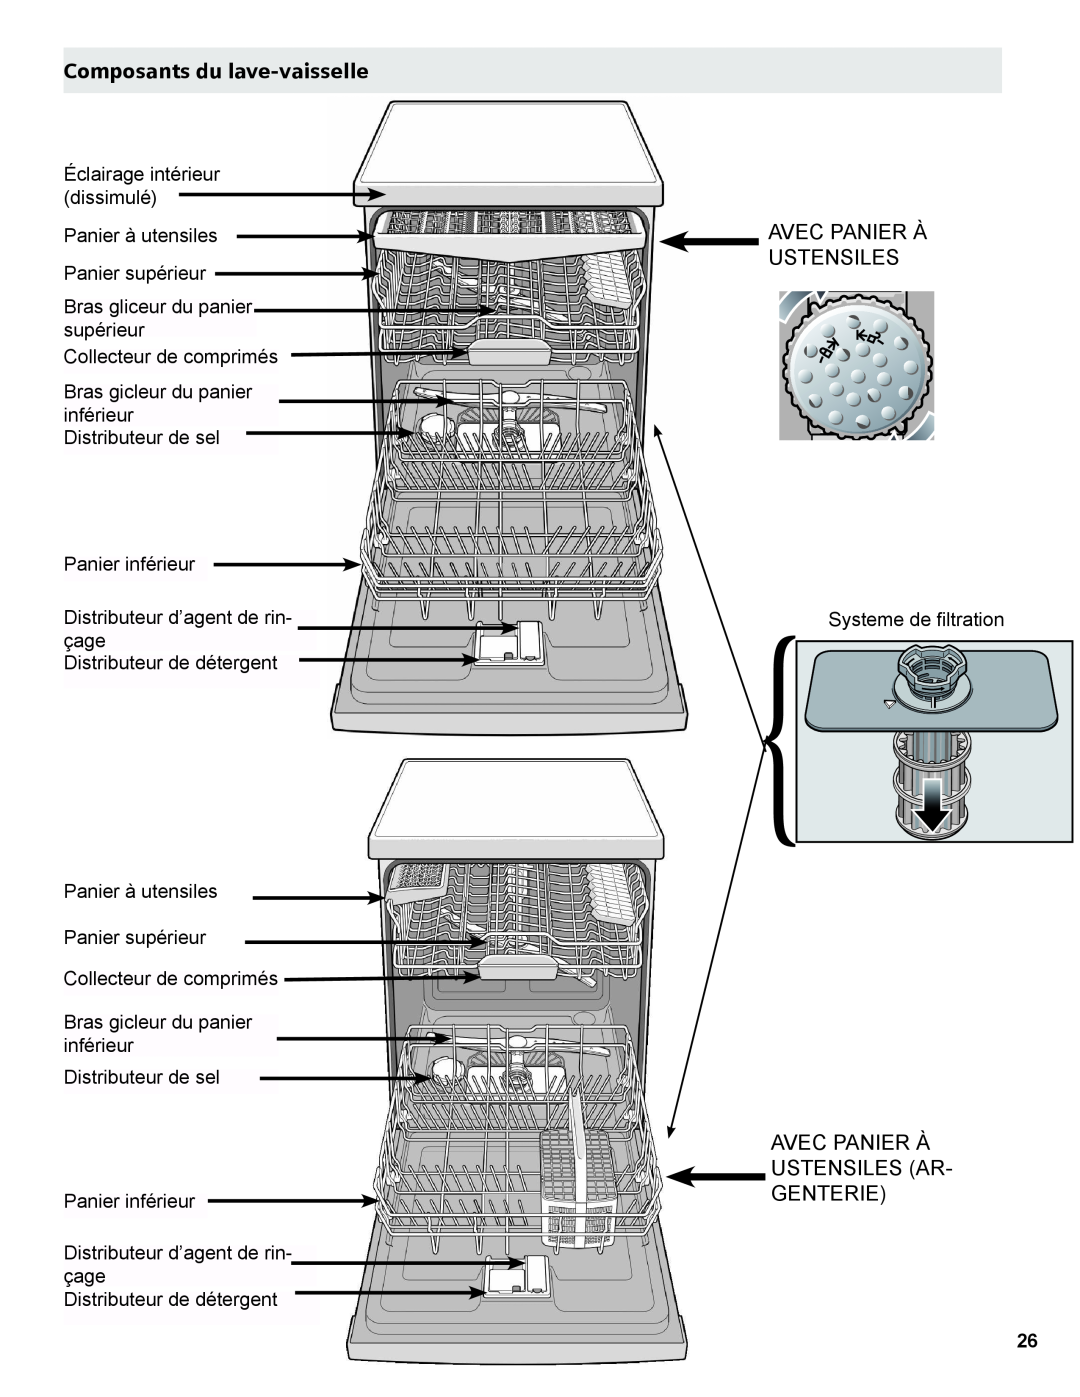 Thermador Dishwasher manual Composants du lave-vaisselle, Avec Panier À Ustensiles Ar- Genterie 